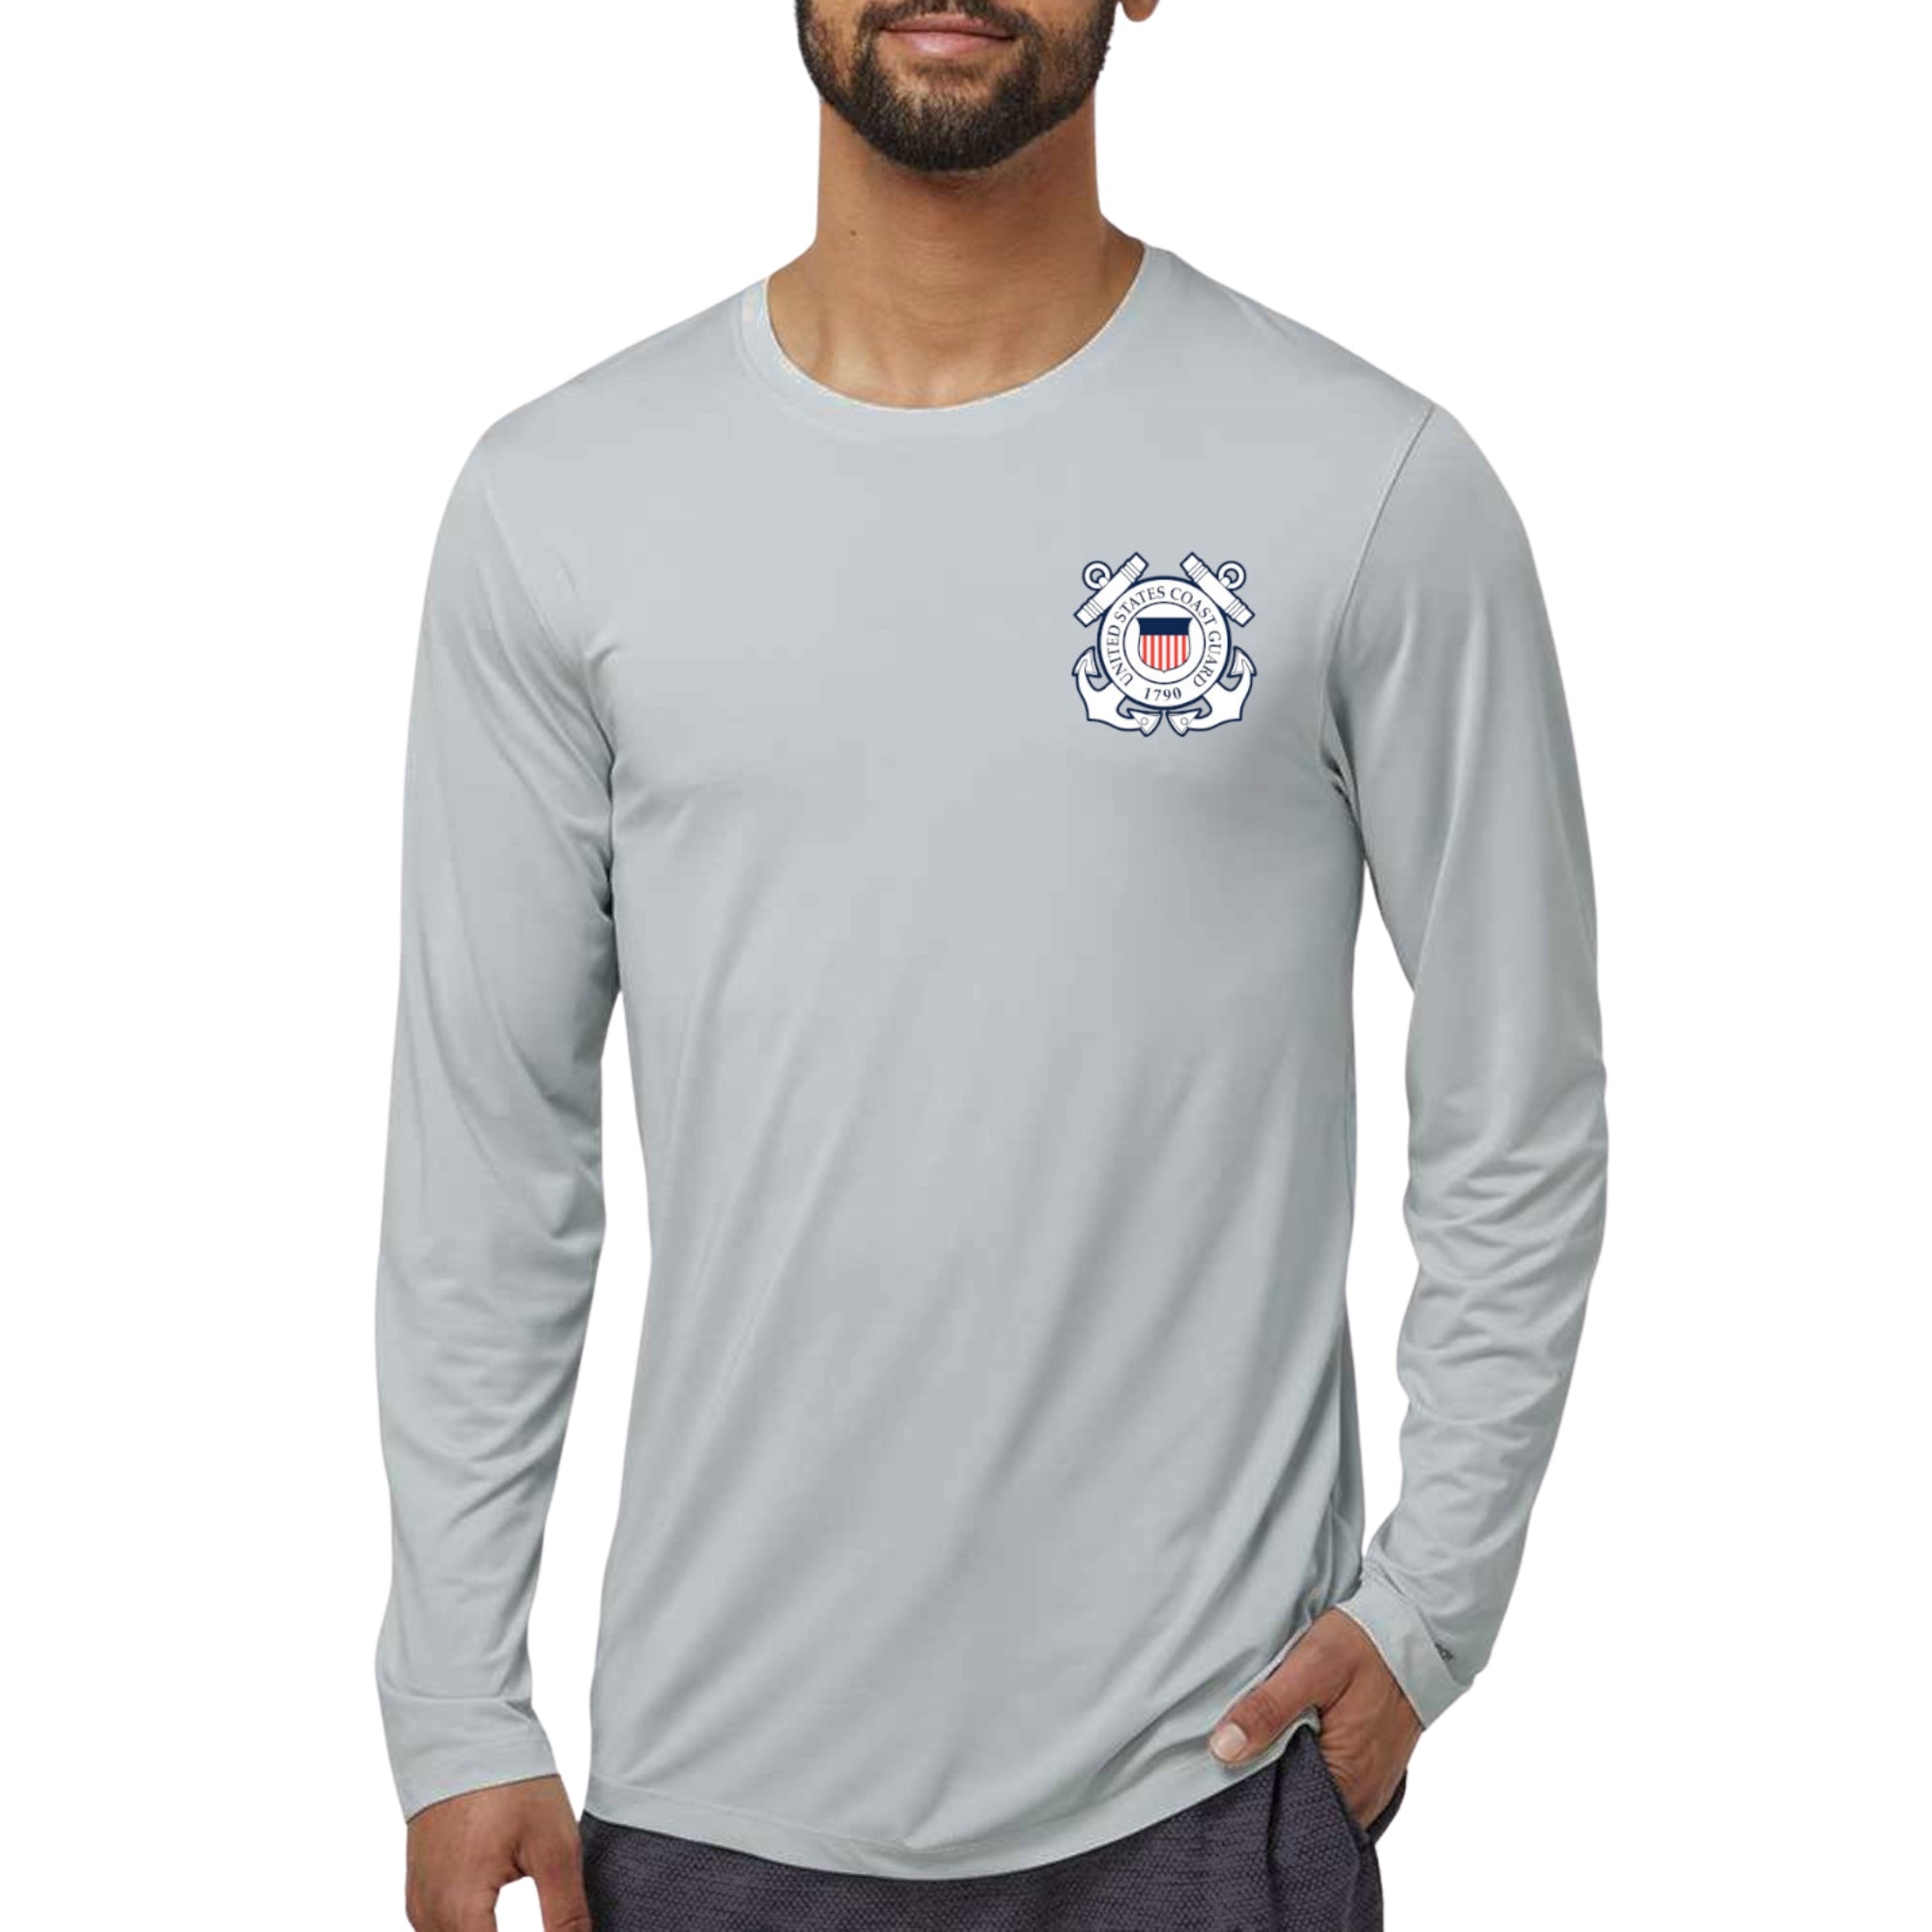 Coast Guard Aruba Performance Longsleeve T-Shirt